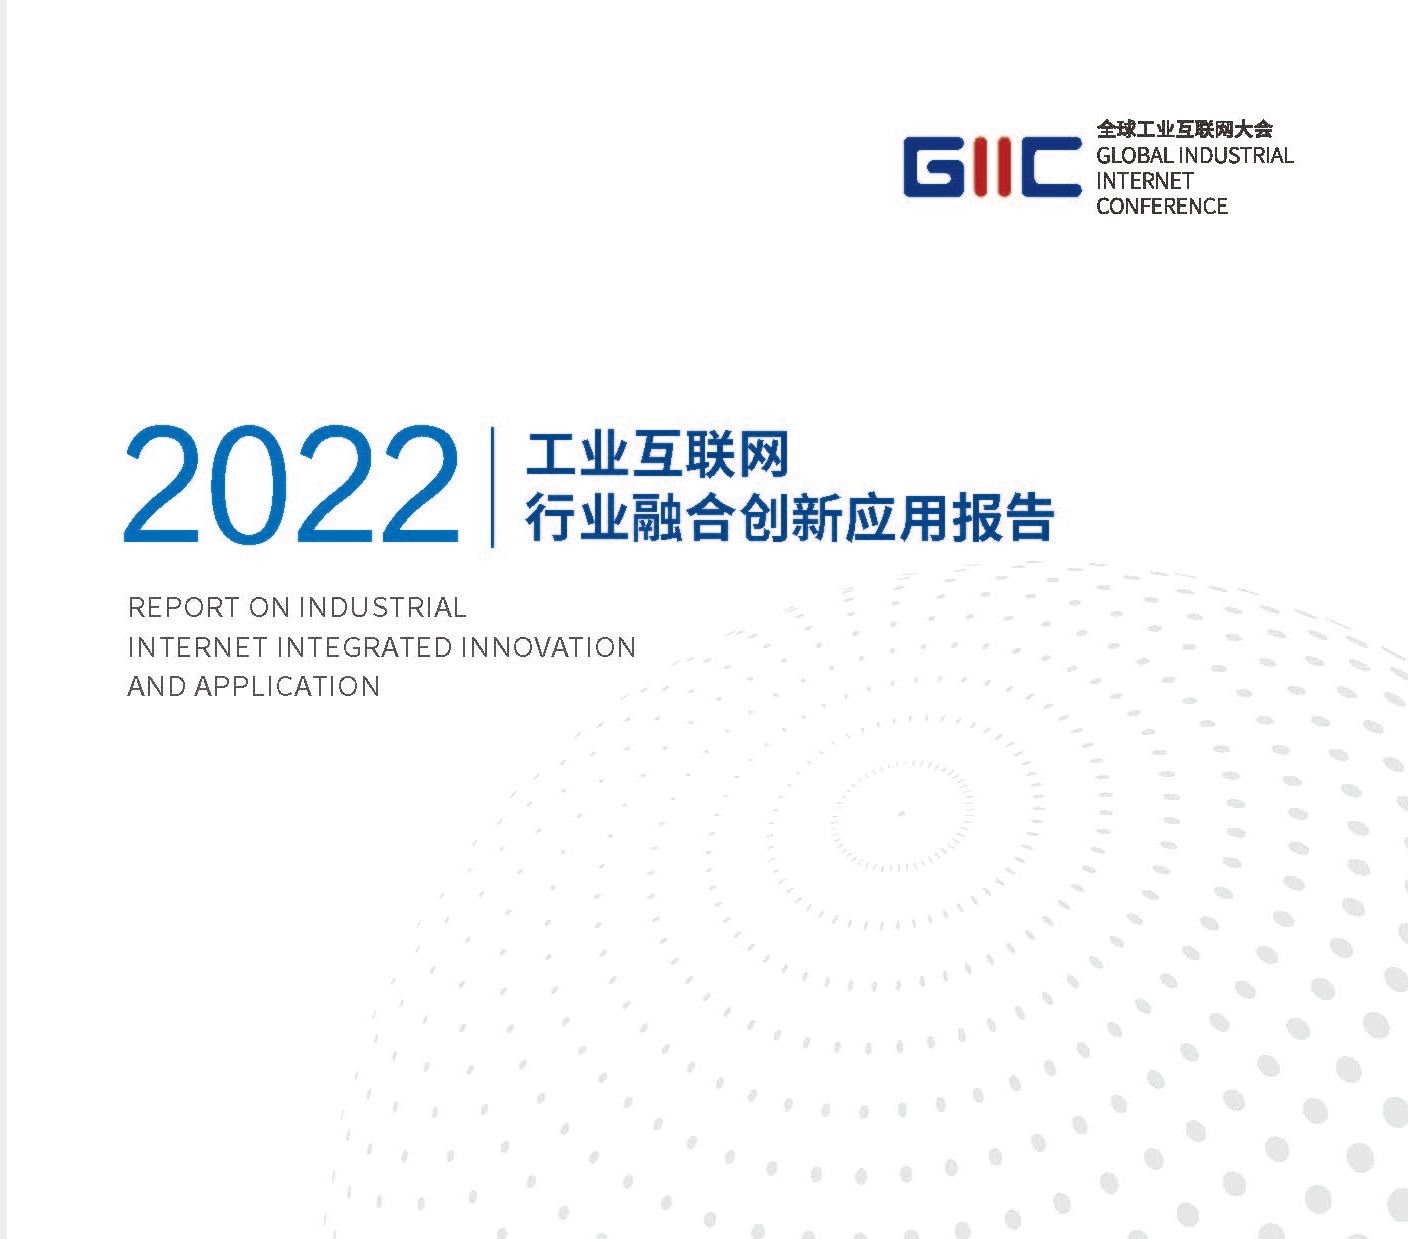 《2022工业互联网行业融合创新应用报告》摘要